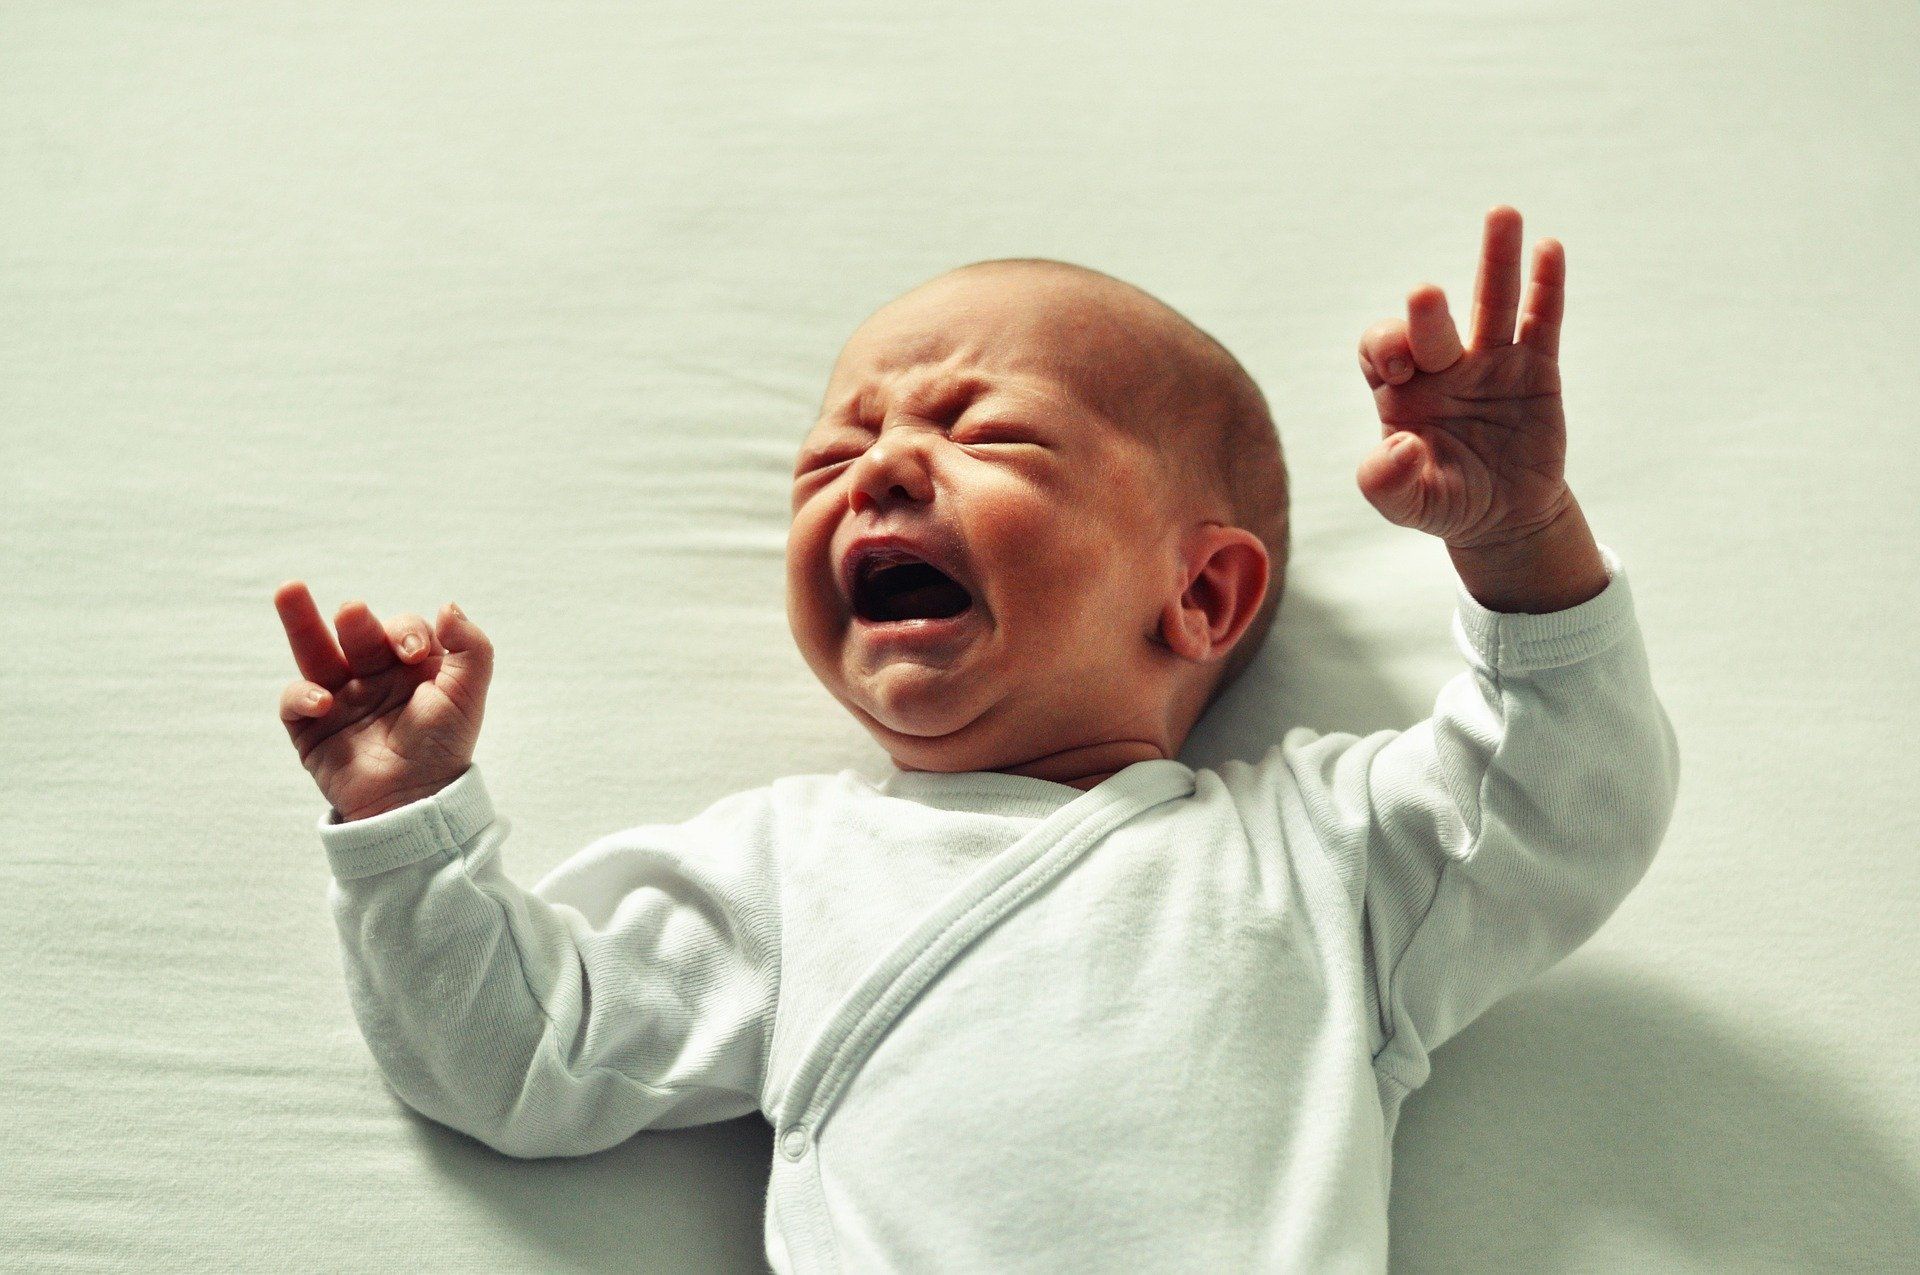 Wiotkość krtani u niemowlaka – co oznacza, jak się objawia, jakie są przyczyny i sposoby leczenia?